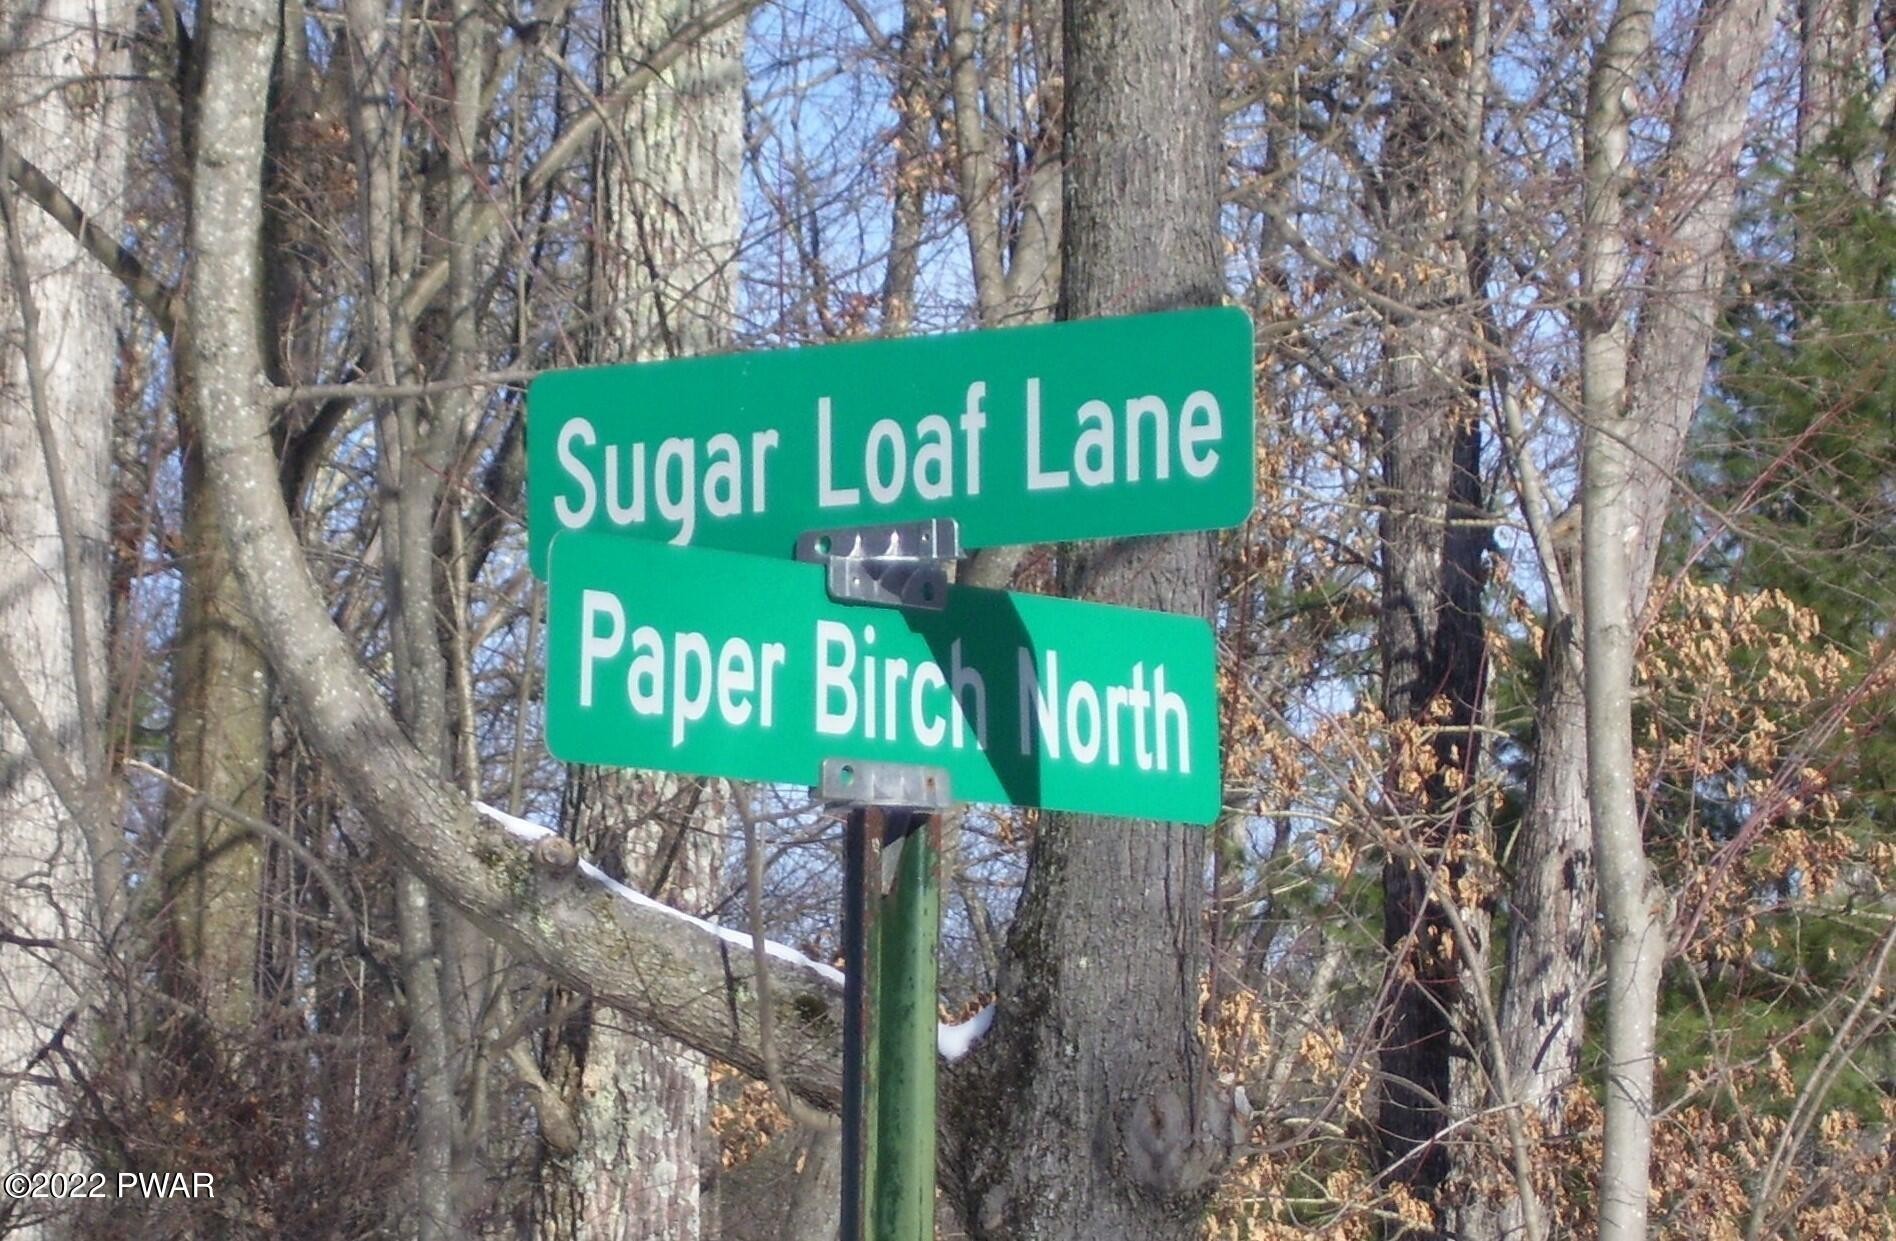 2. Lot 570 Sugar Loaf Lane